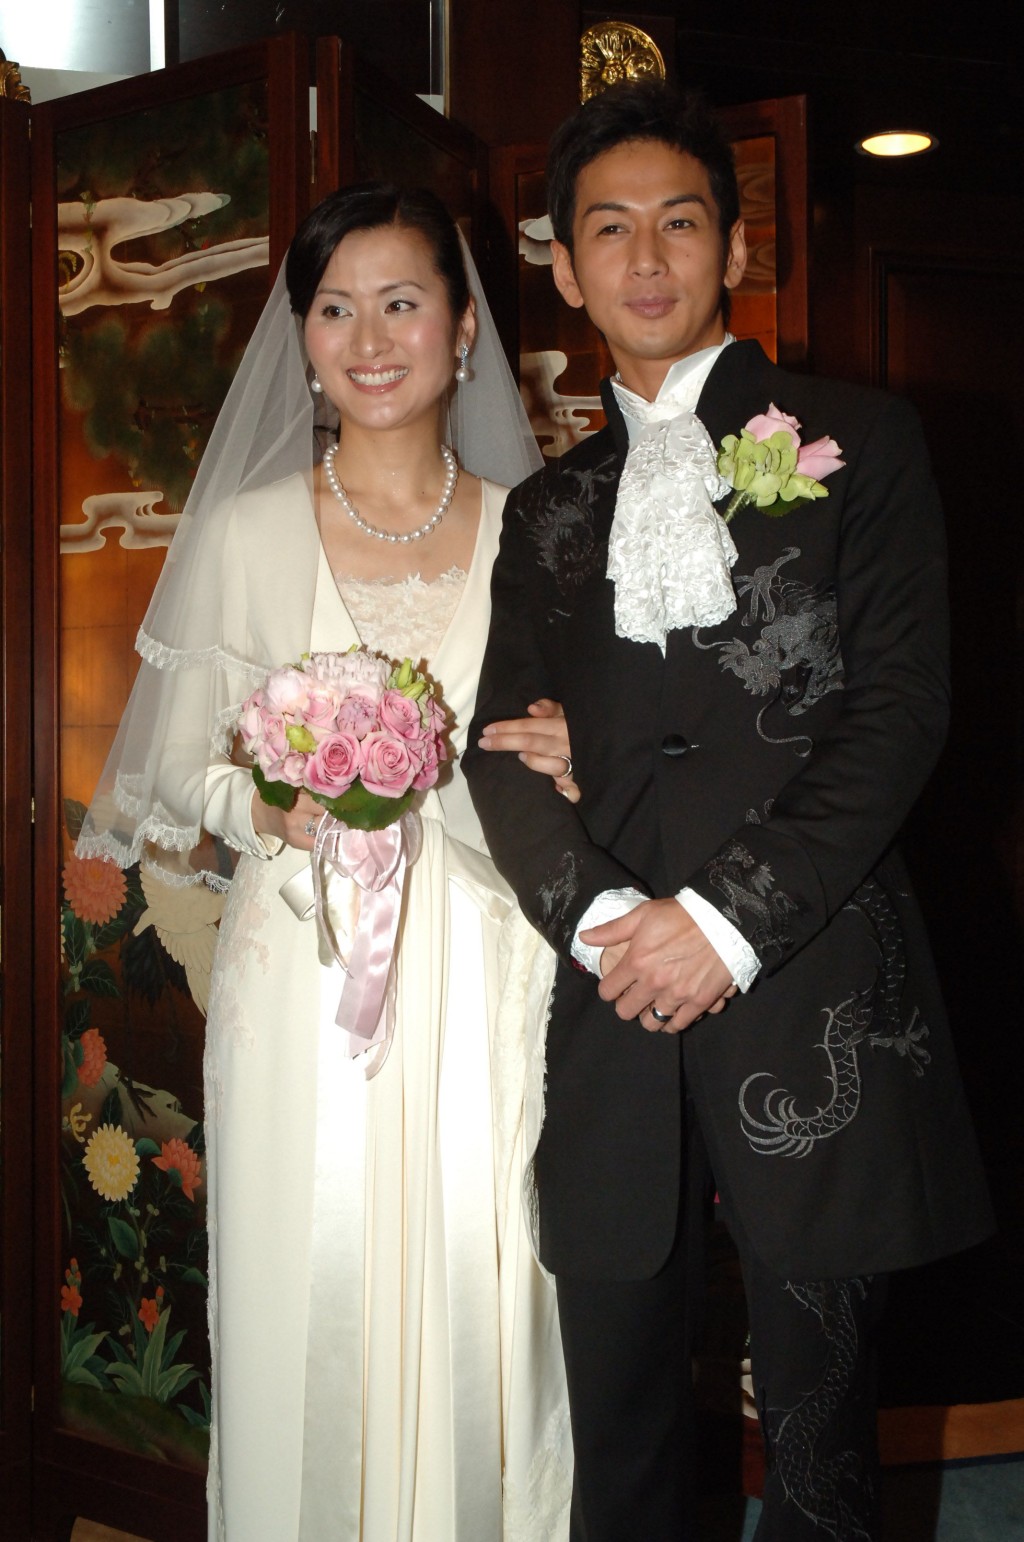 吴家乐与周蕙蕙于2006年结婚。